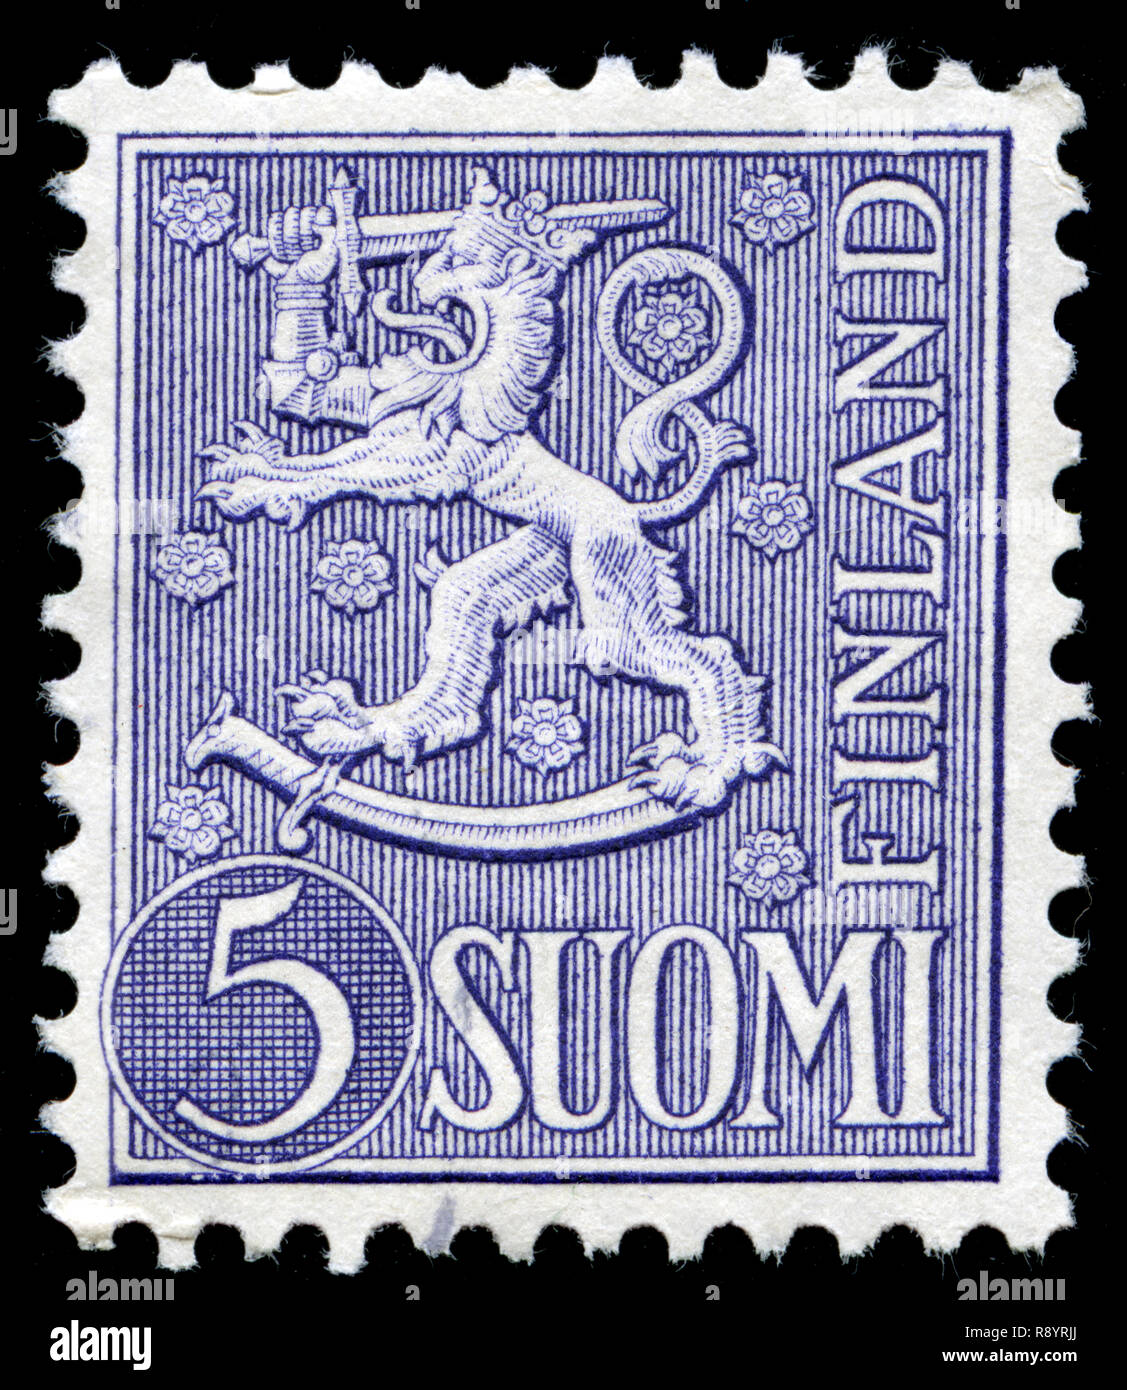 Timbre-poste de la Finlande dans le blason de la série 1954 modèle, Banque D'Images